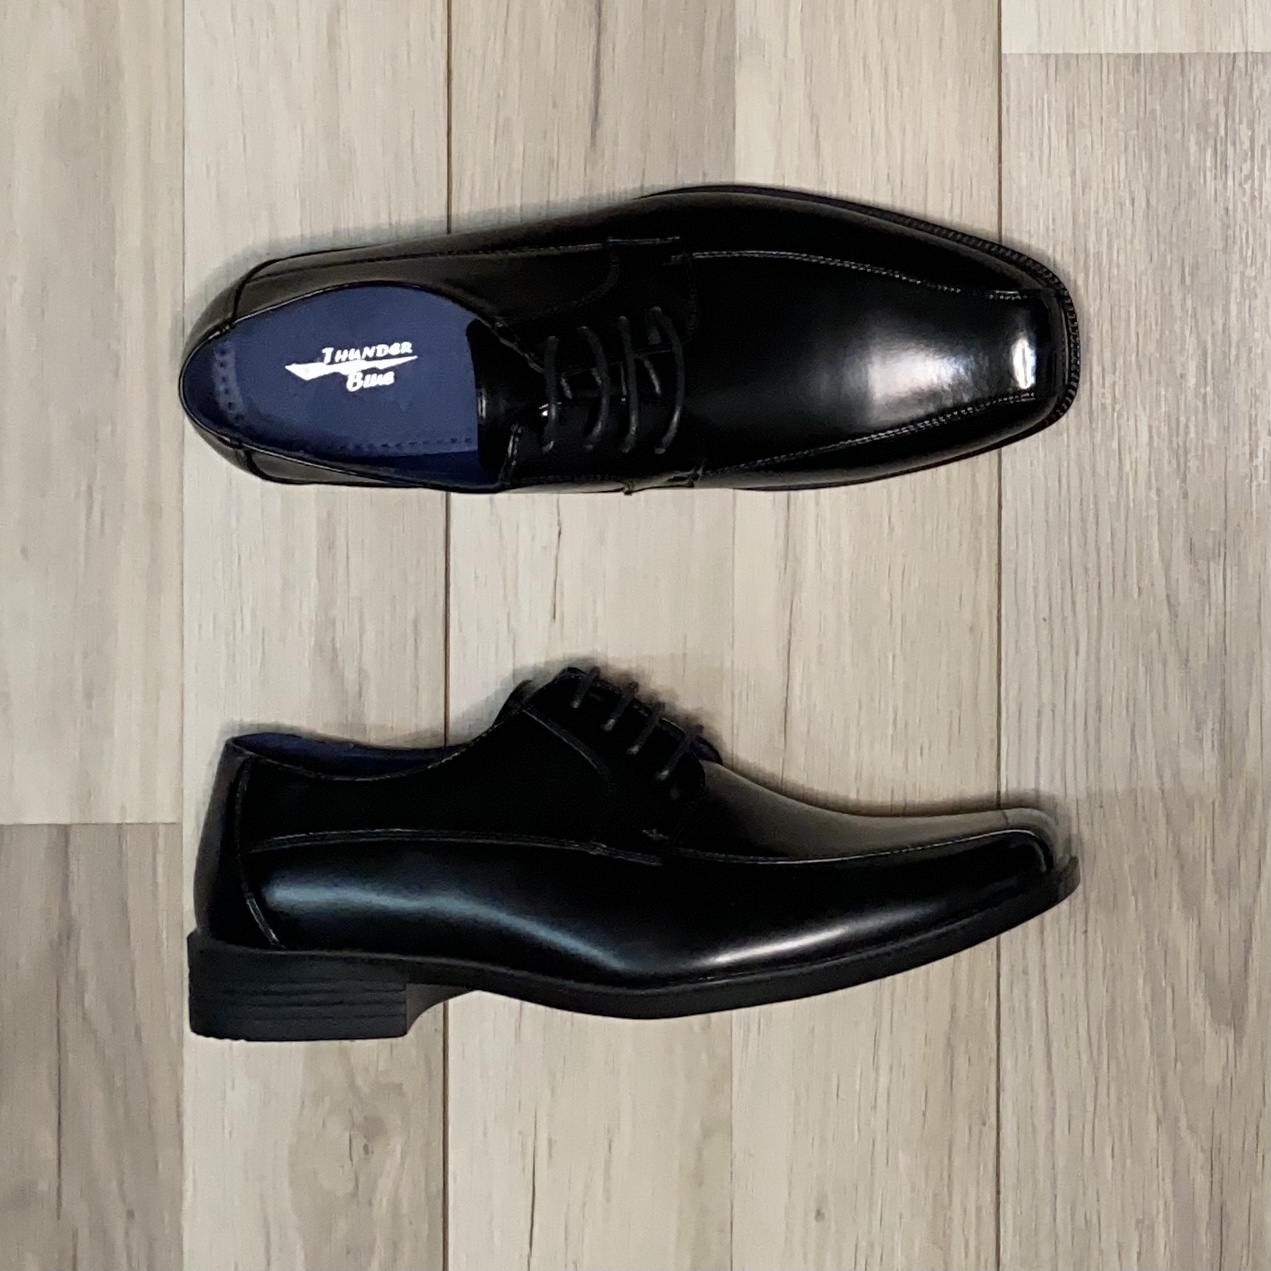 Zapato Oxford Negro